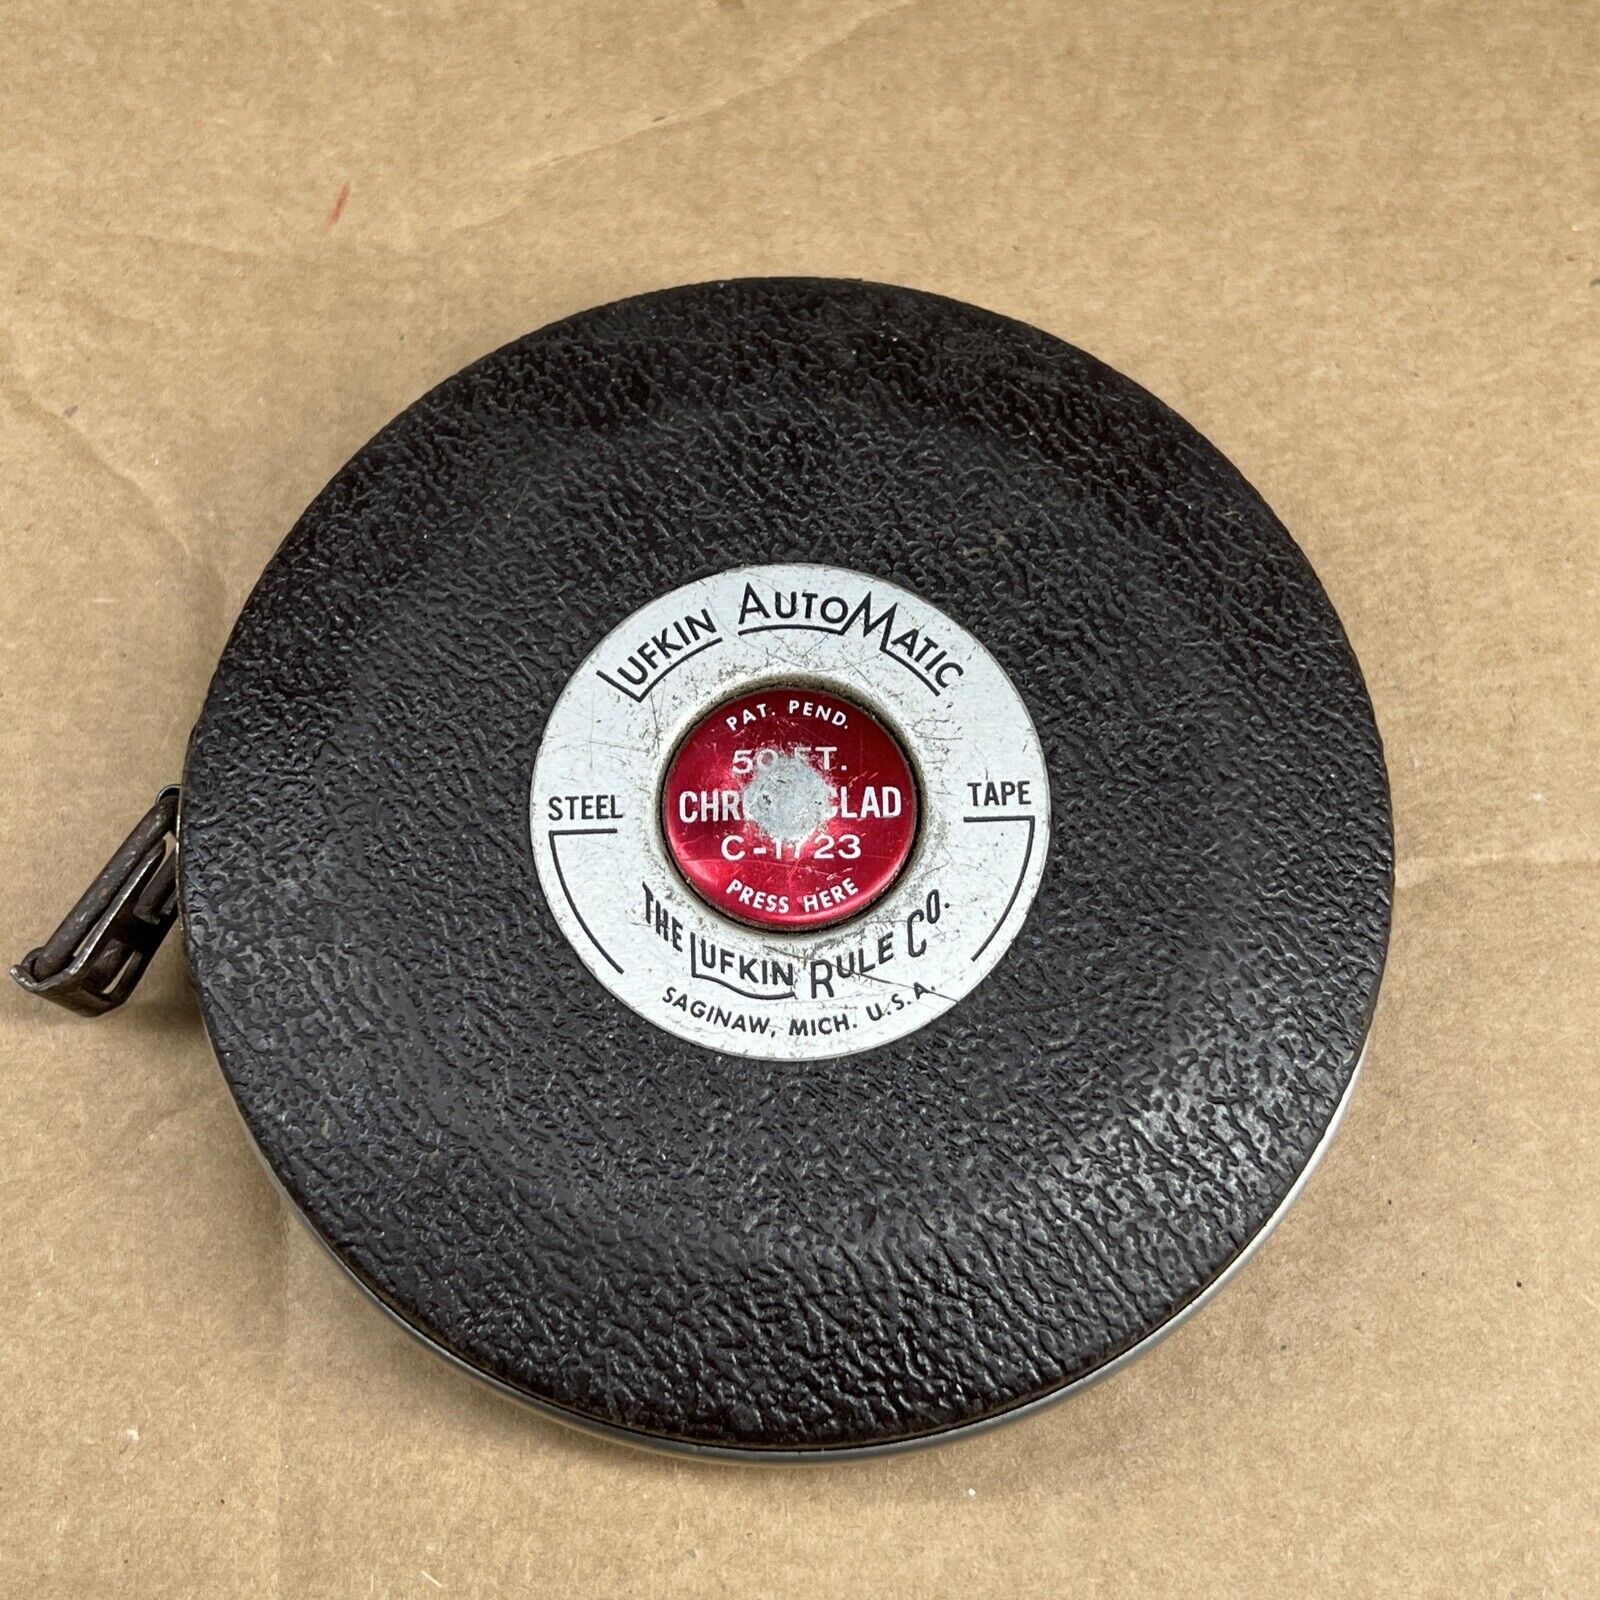 Vintage Lufkin Self Winding Tape Measure C-1723 Steel Tape USA